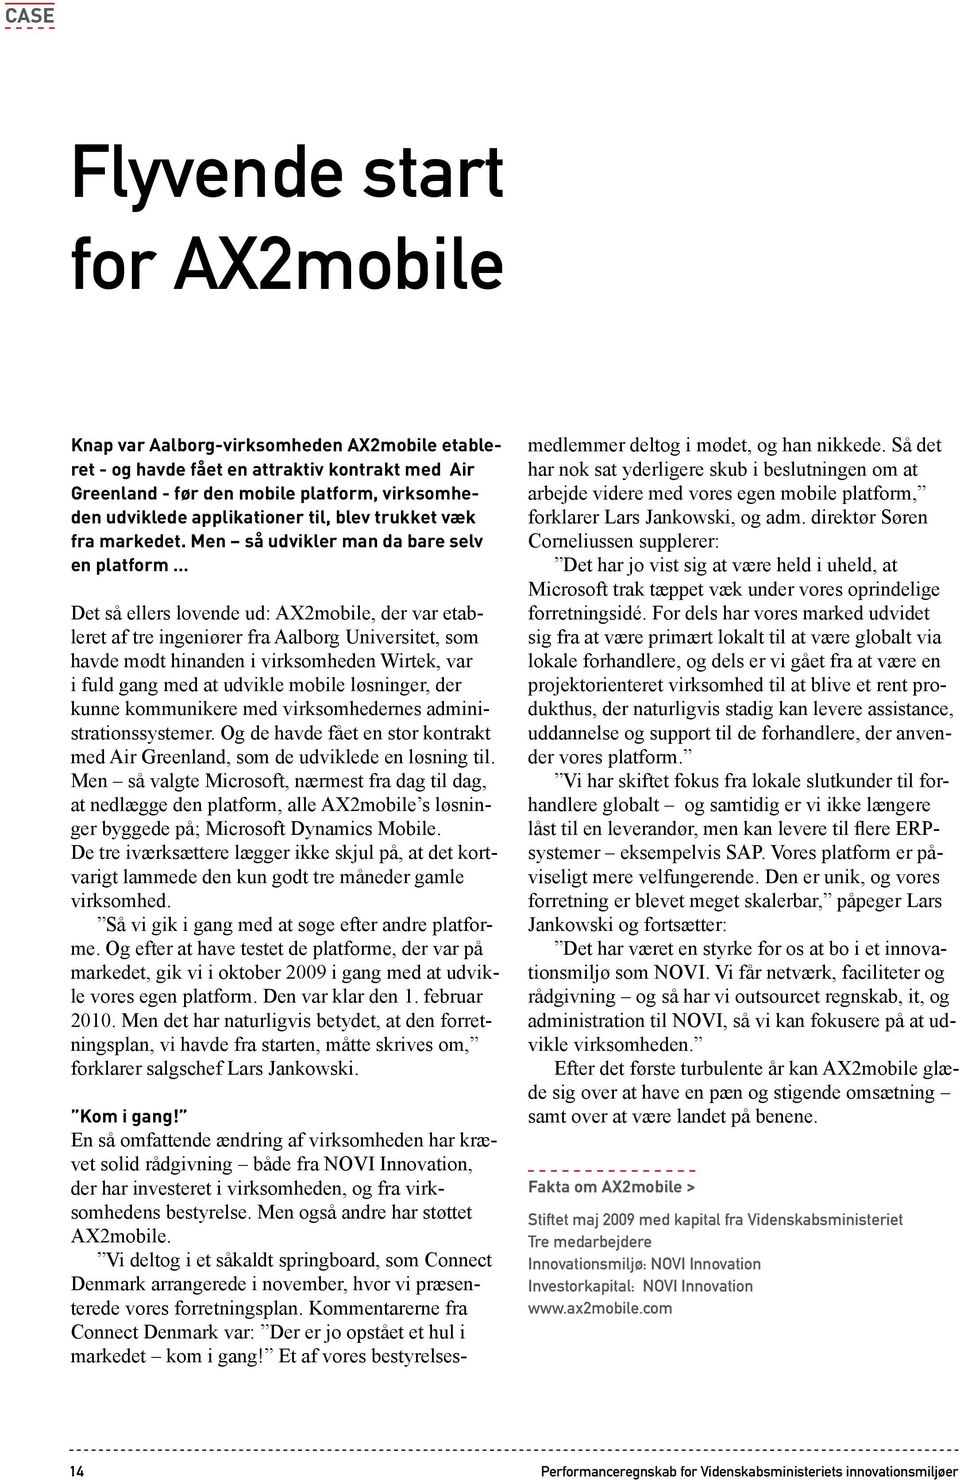 Men så udvikler man da bare selv en platform Det så ellers lovende ud: AX2mobile, der var etableret af tre ingeniører fra Aalborg Universitet, som havde mødt hinanden i virksomheden Wirtek, var i